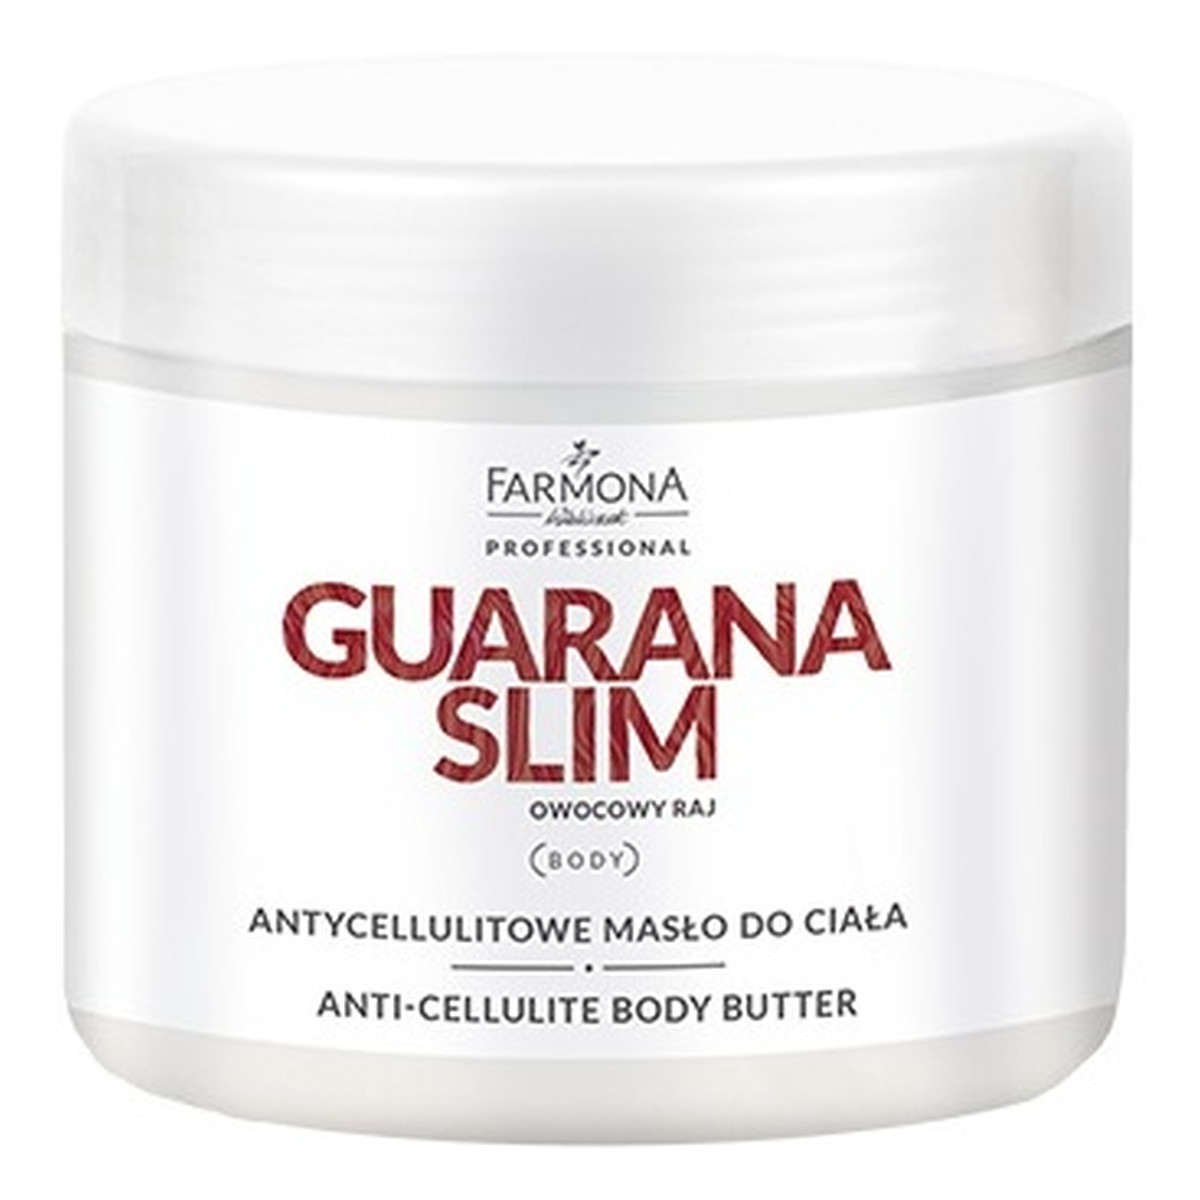 Farmona Professional Guarana Slim antycellulitowe masło do ciała 500ml